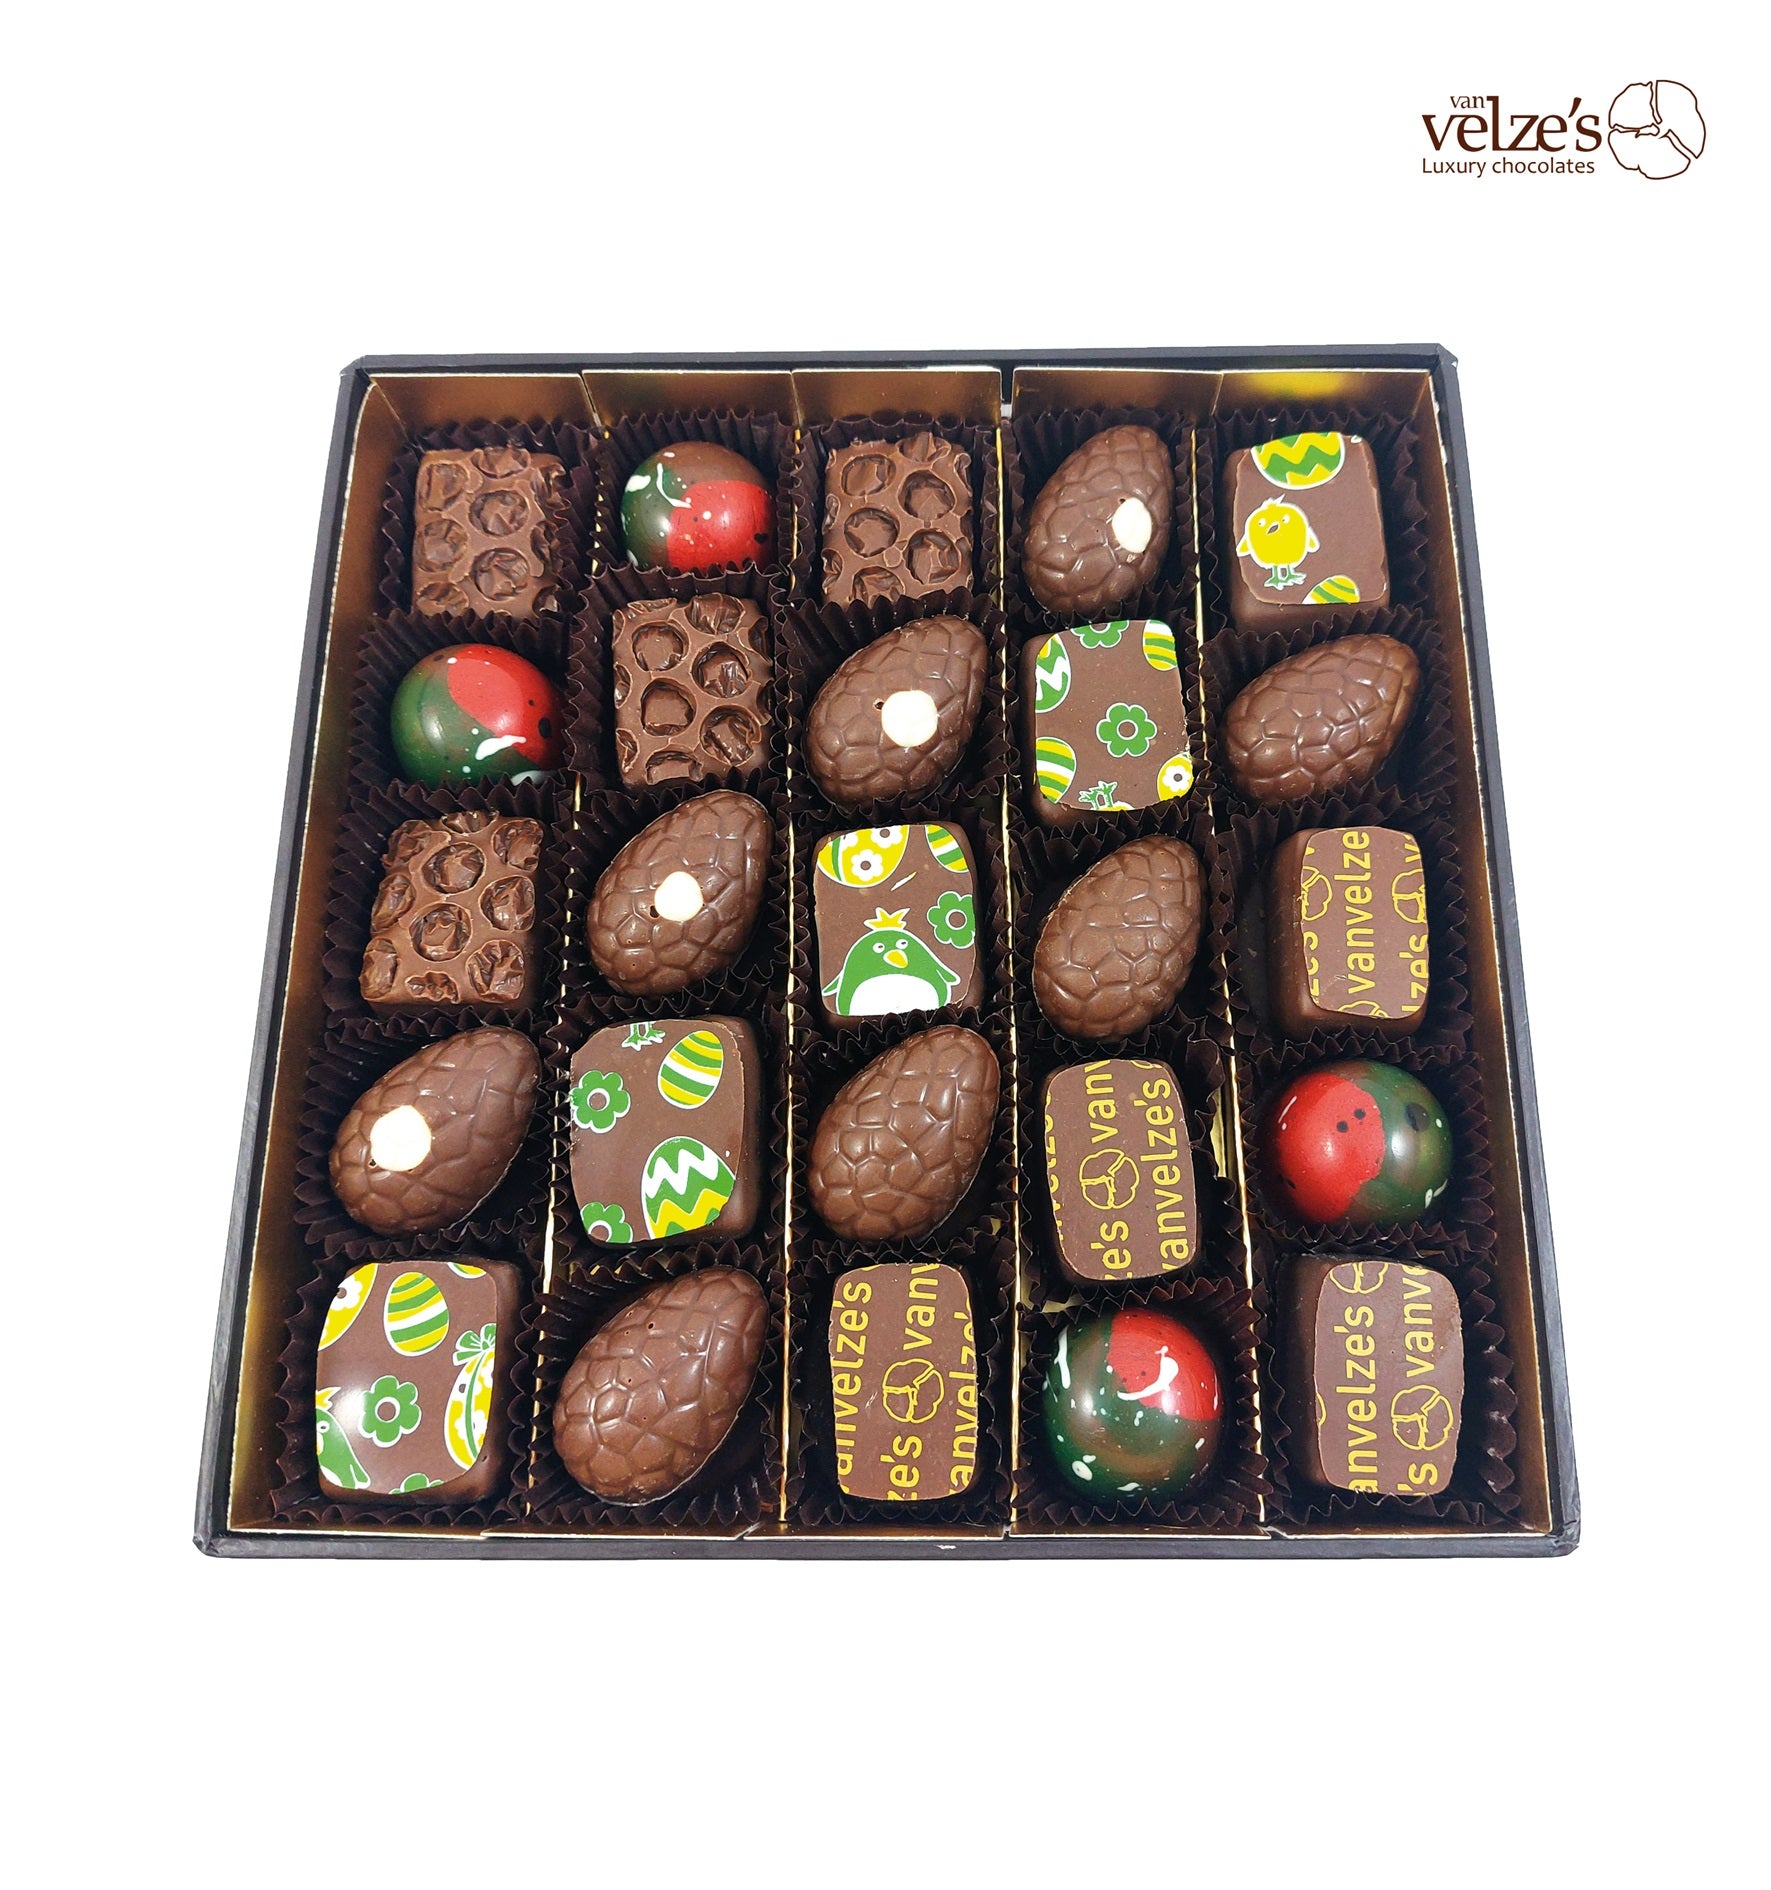 Artisan Chocolates Ireland, Mayo Chocolates, Easter chocolates, Luxury chocolates